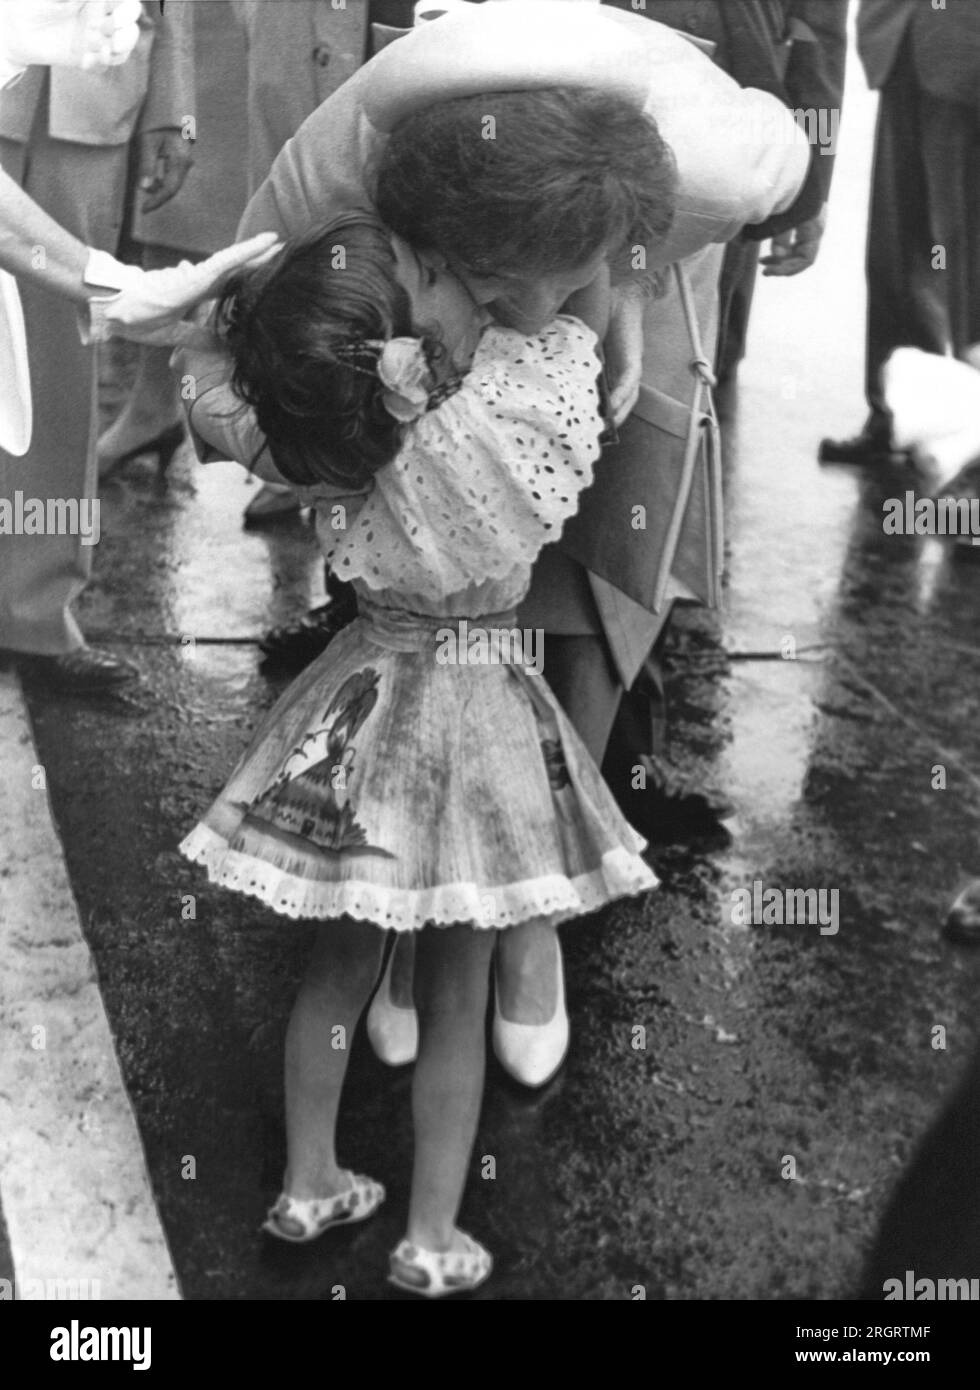 Caracas, Venezuela: 16. November 1961 Frau Jacqueline Kennedy gibt der fünf Jahre alten Maria Gianetta einen Kuss, nachdem das kleine Mädchen ihr bei ihrer Ankunft am Flughafen hier eine Orchidee schenkte. Stockfoto